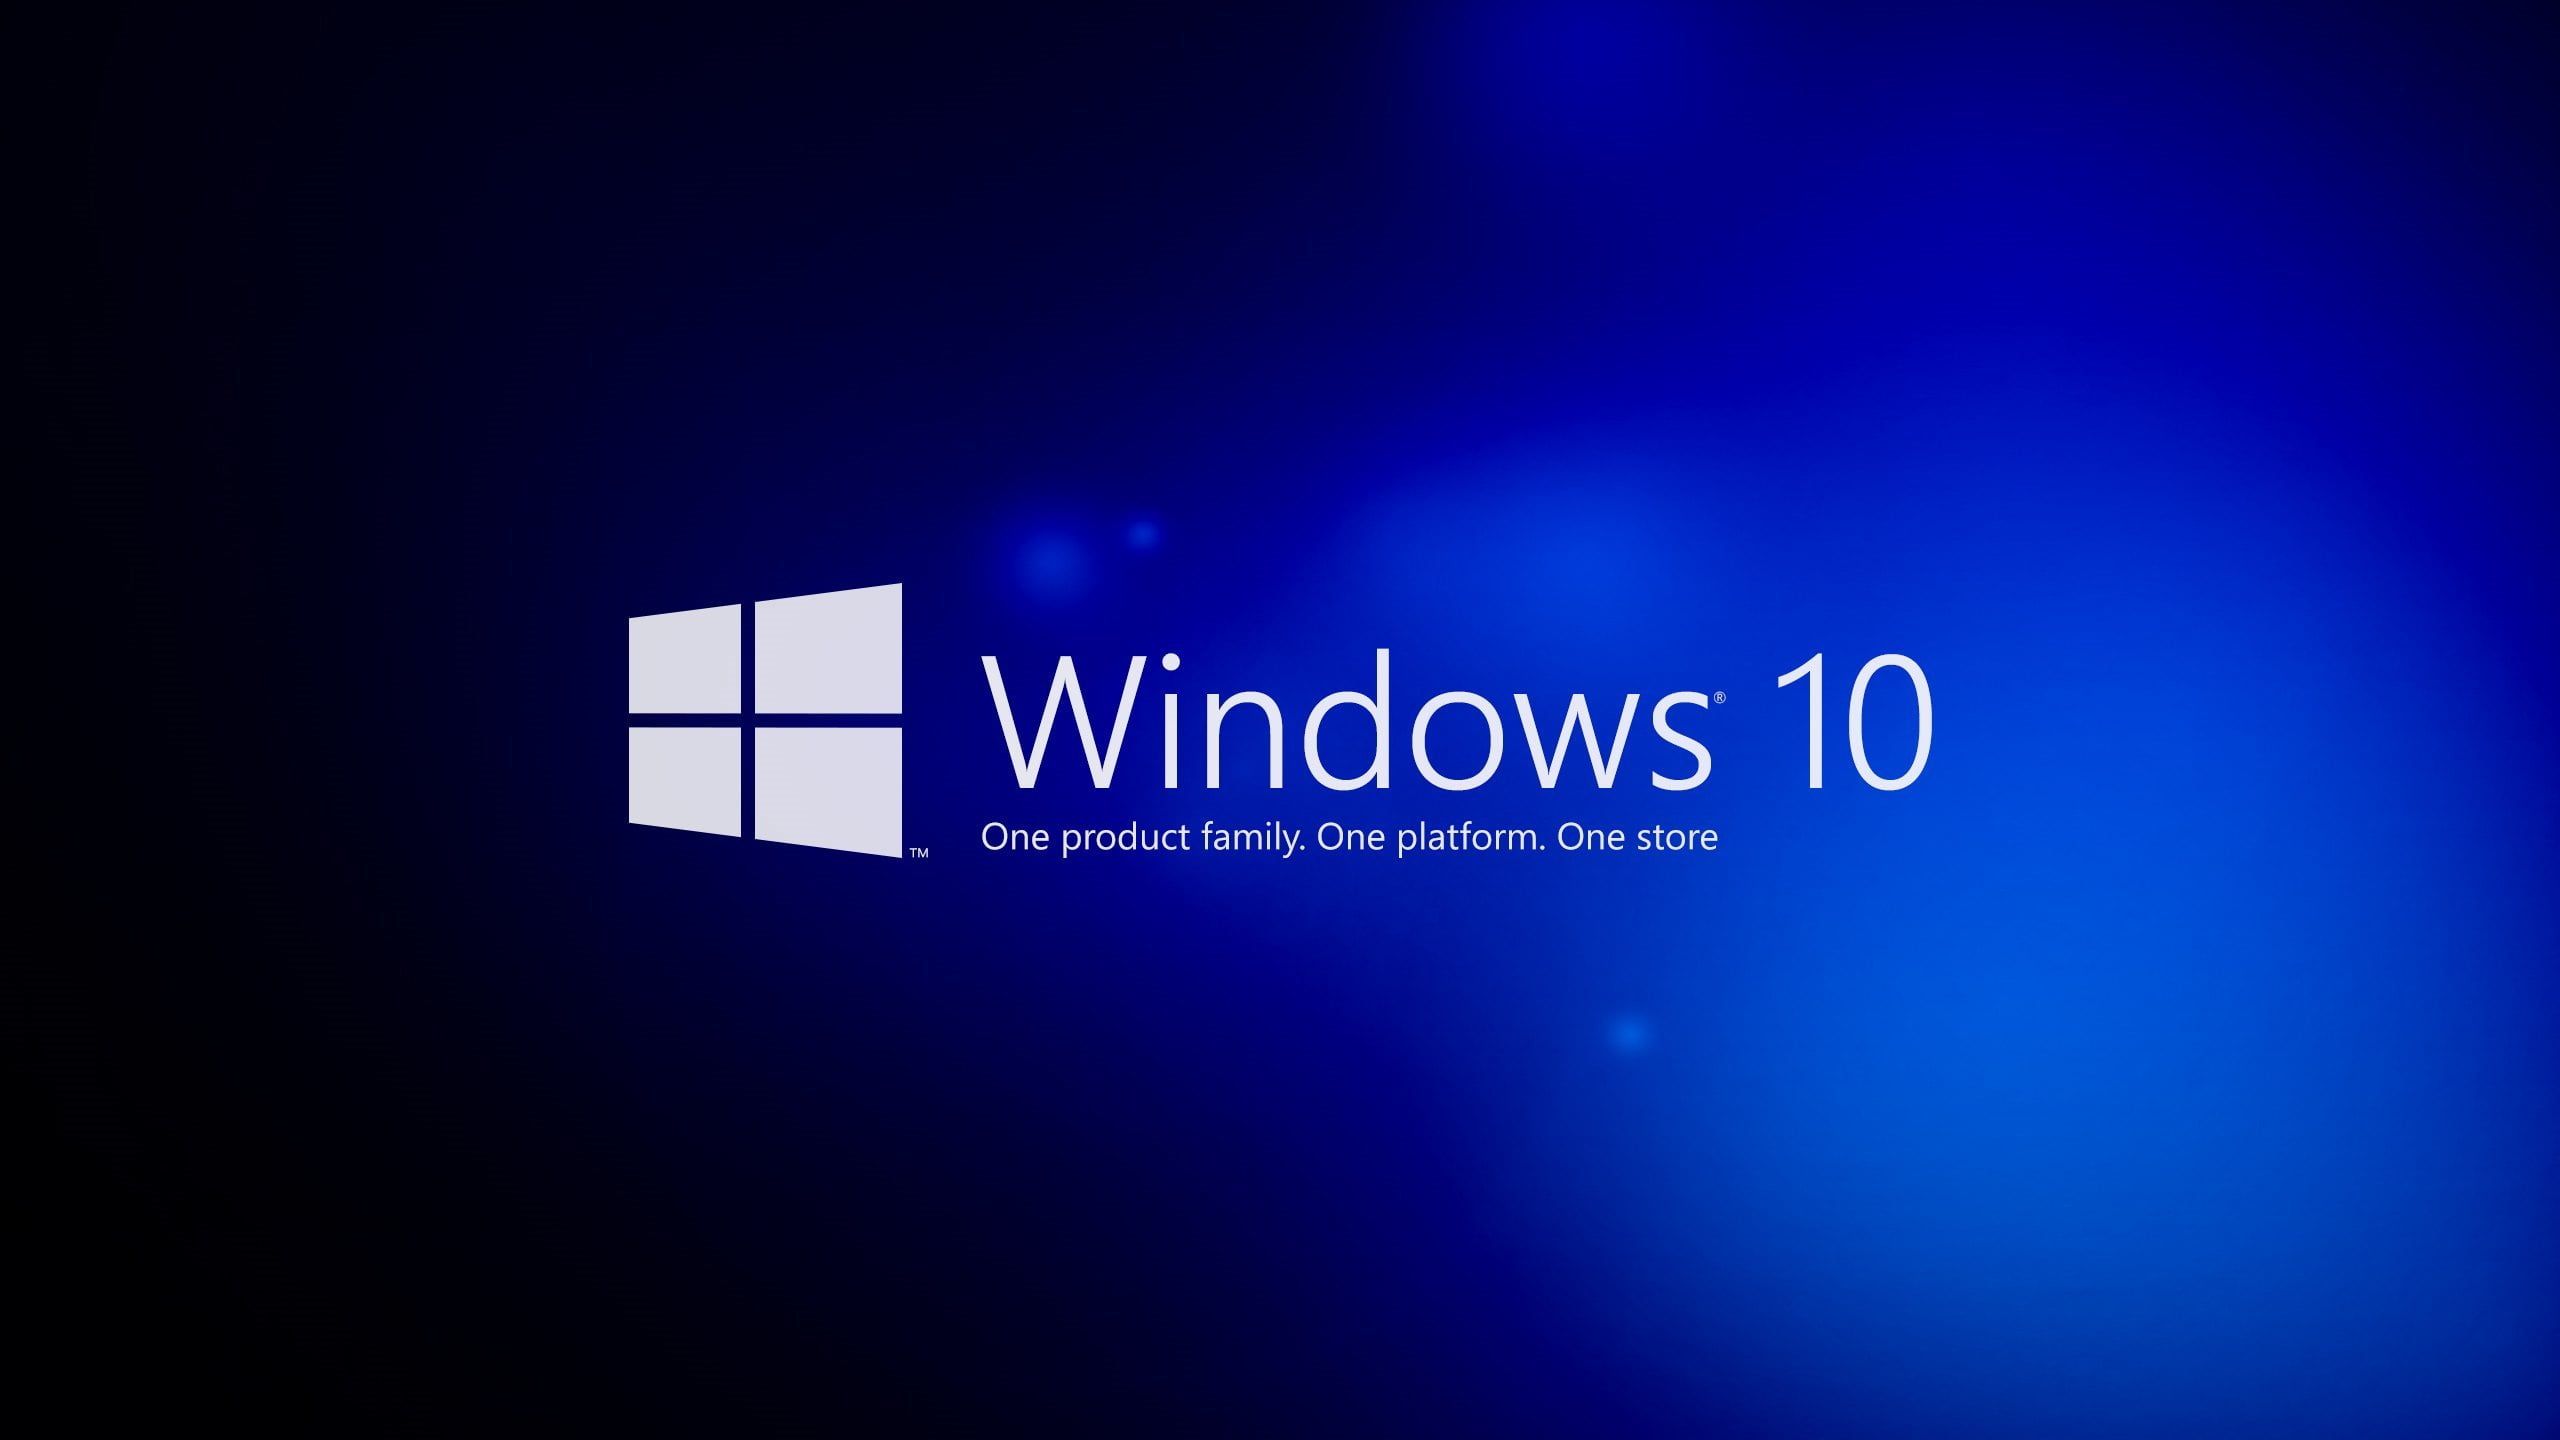 Hình nền xanh Windows 10 là một trong những lựa chọn phổ biến nhất để tăng sự sang trọng và thanh lịch cho màn hình desktop của bạn. Hãy nhấp vào hình ảnh liên quan để khám phá những phong cách hình nền xanh thần thái và đẳng cấp.